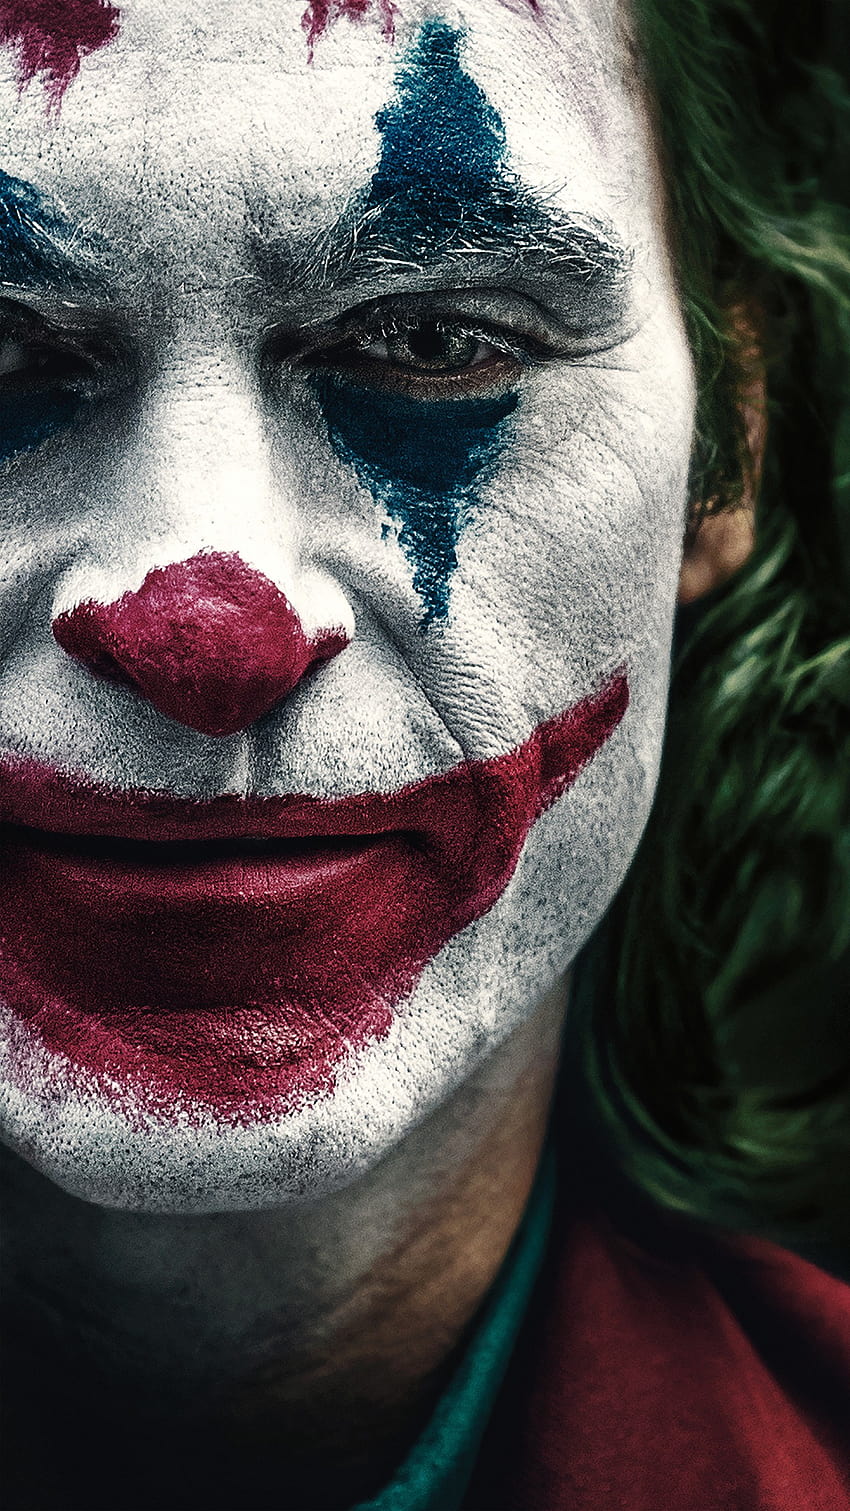 Joaquin Phoenix as Joker 2019, joker 2019 joaquin phoenix android ...